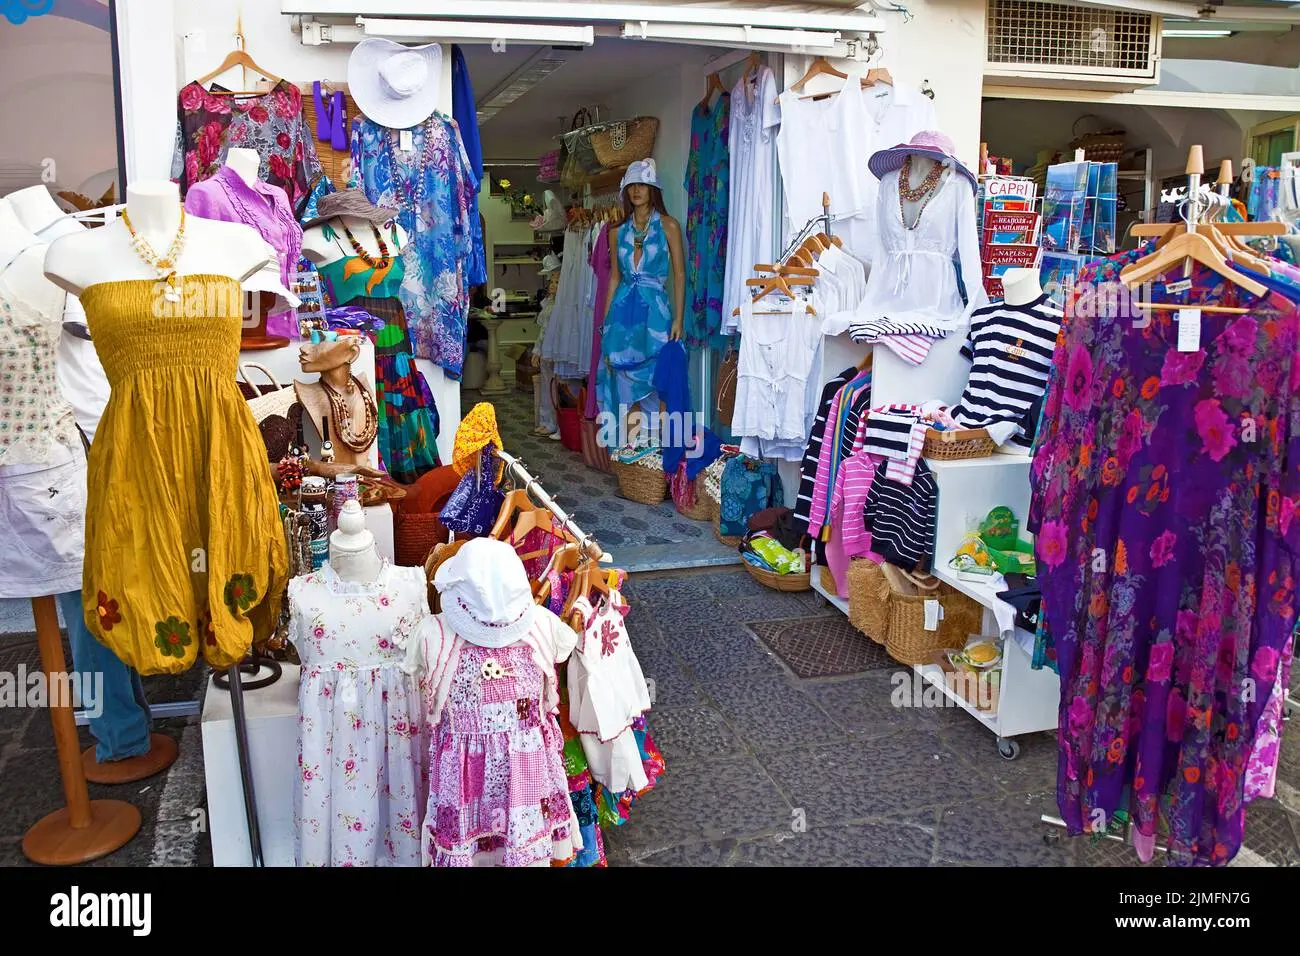 tiendas de moda en napoles - Qué hacer en Nápoles gratis